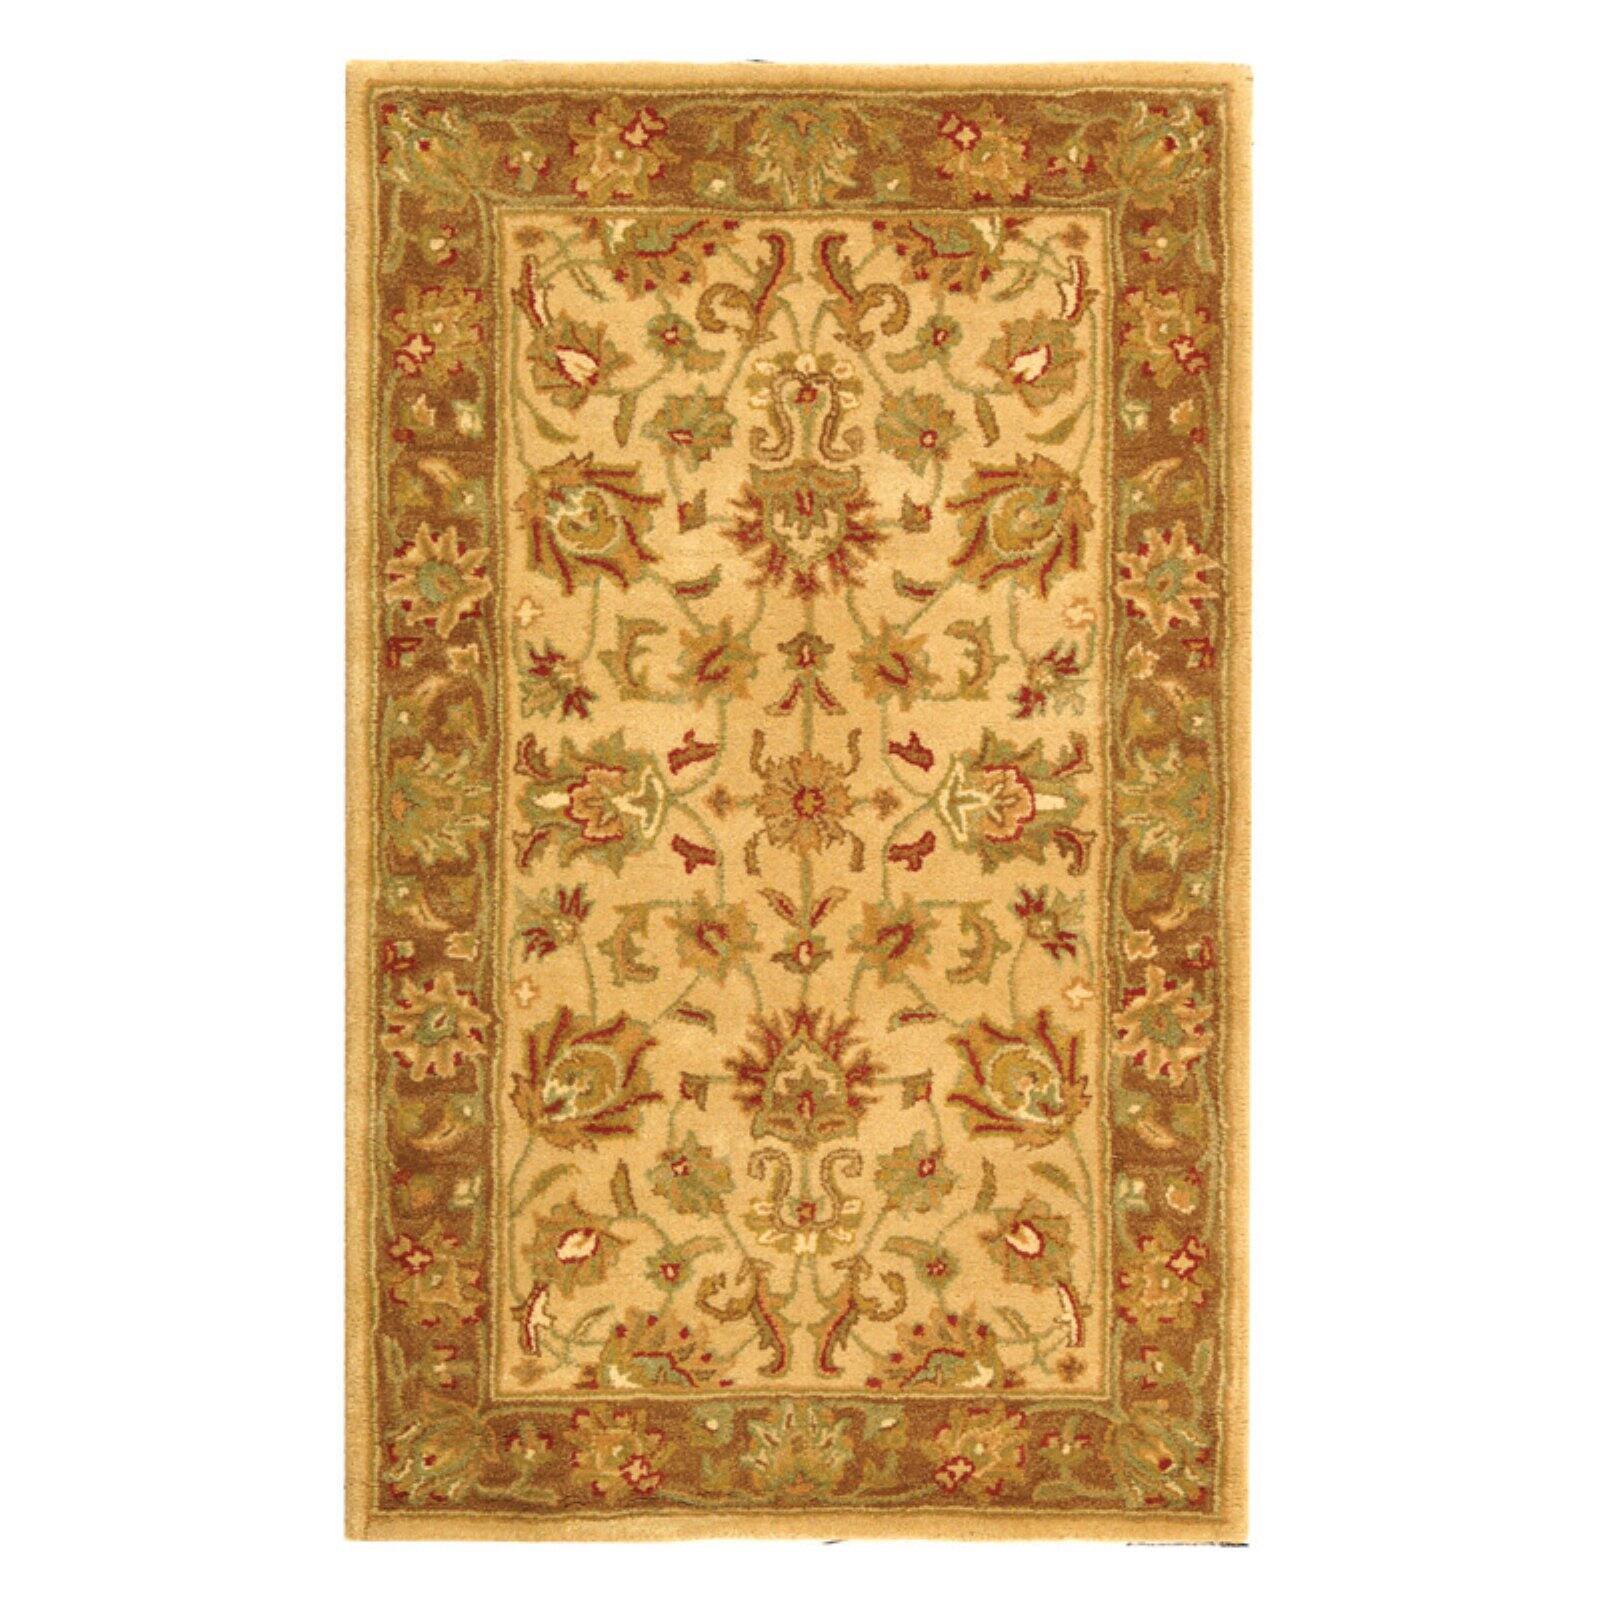 SAFAVIEH Heritage Regis Traditional Wool Runner Rug, Ivory/Brown, 2'3" x 10' - image 5 of 9